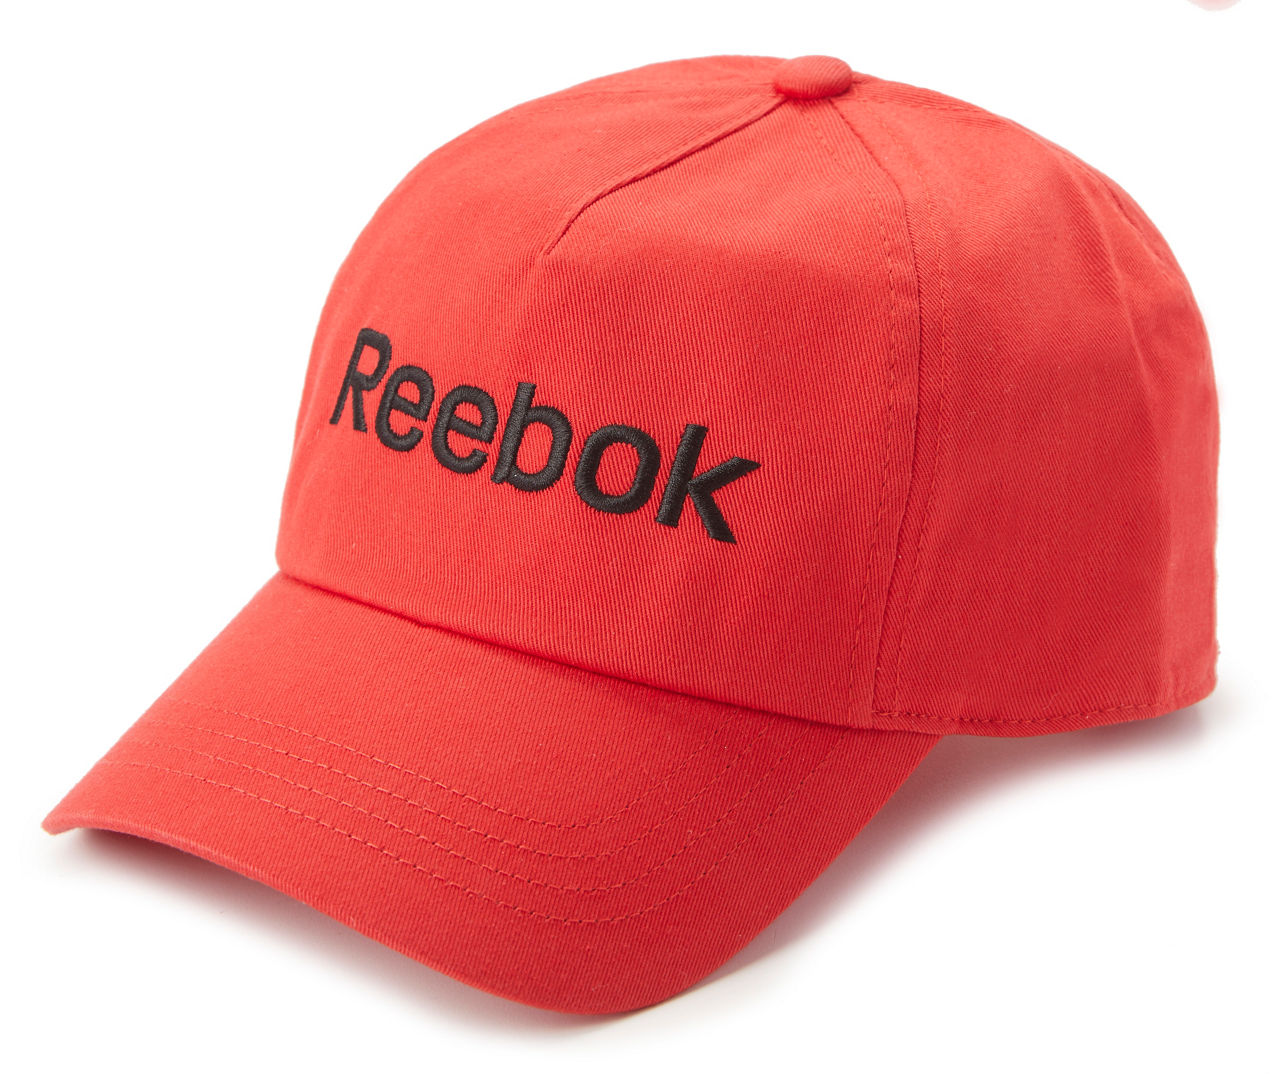 Begyndelsen Fugtighed skarpt Reebok Reebok Men's Baseball Cap | Big Lots